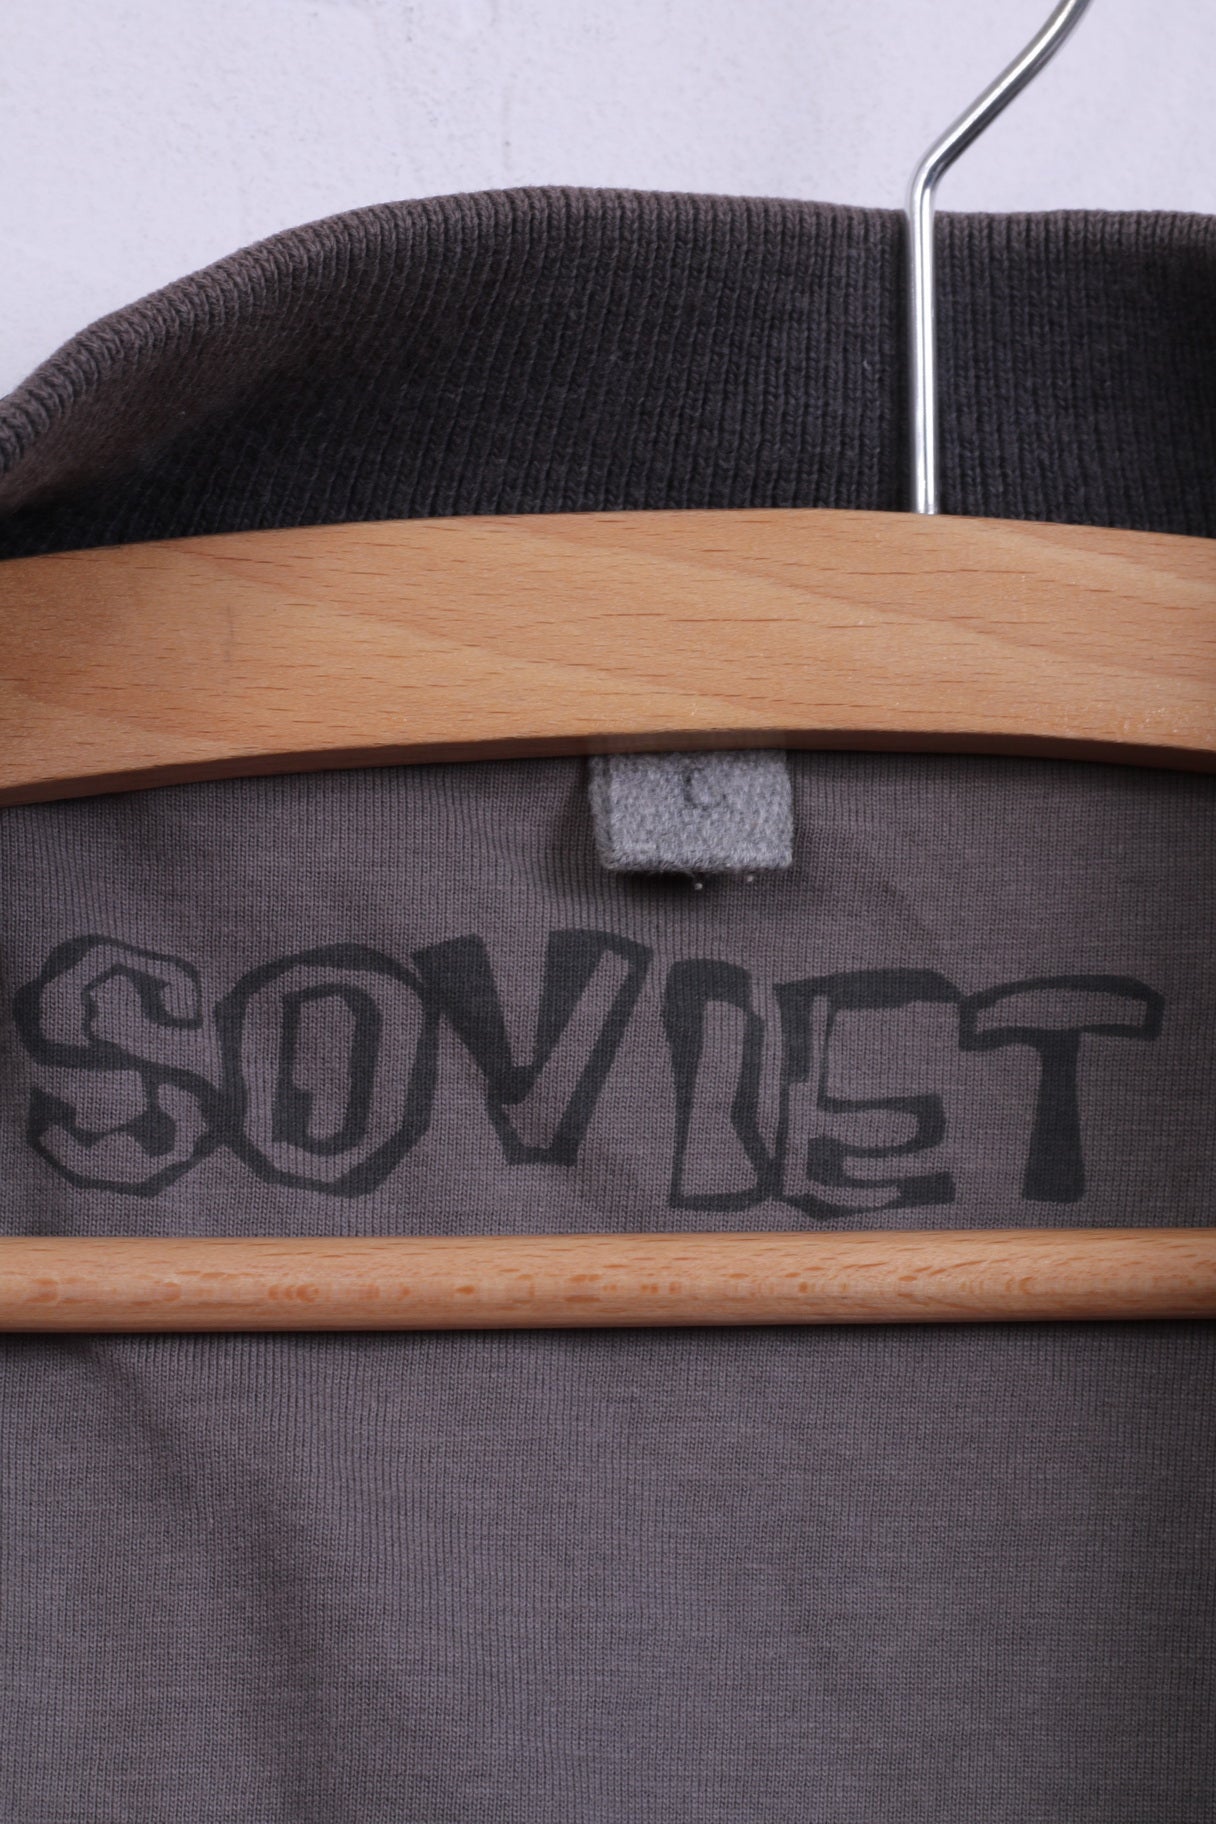 Soviet Jeans Men L Jacket Black Nylon Full Zipper Beyond Jeans Light Top